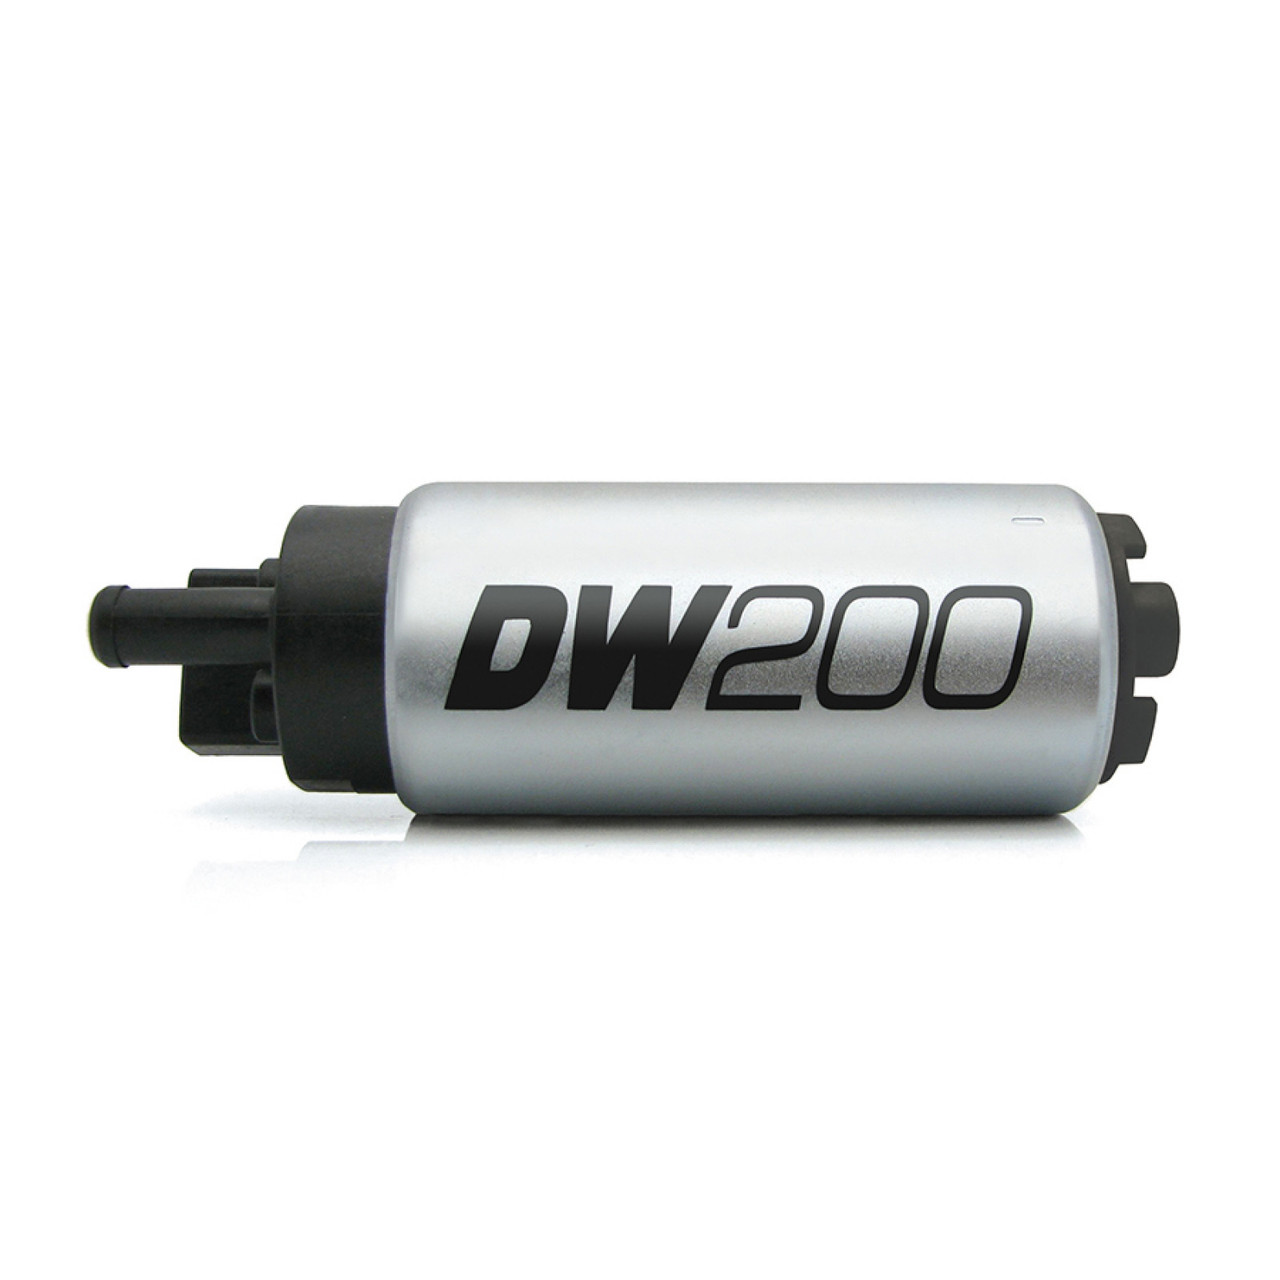 Deatschwerks DW200 255lph Fuel Pump for 94-98 Nissan 240SX (DEW-9-201-1024)